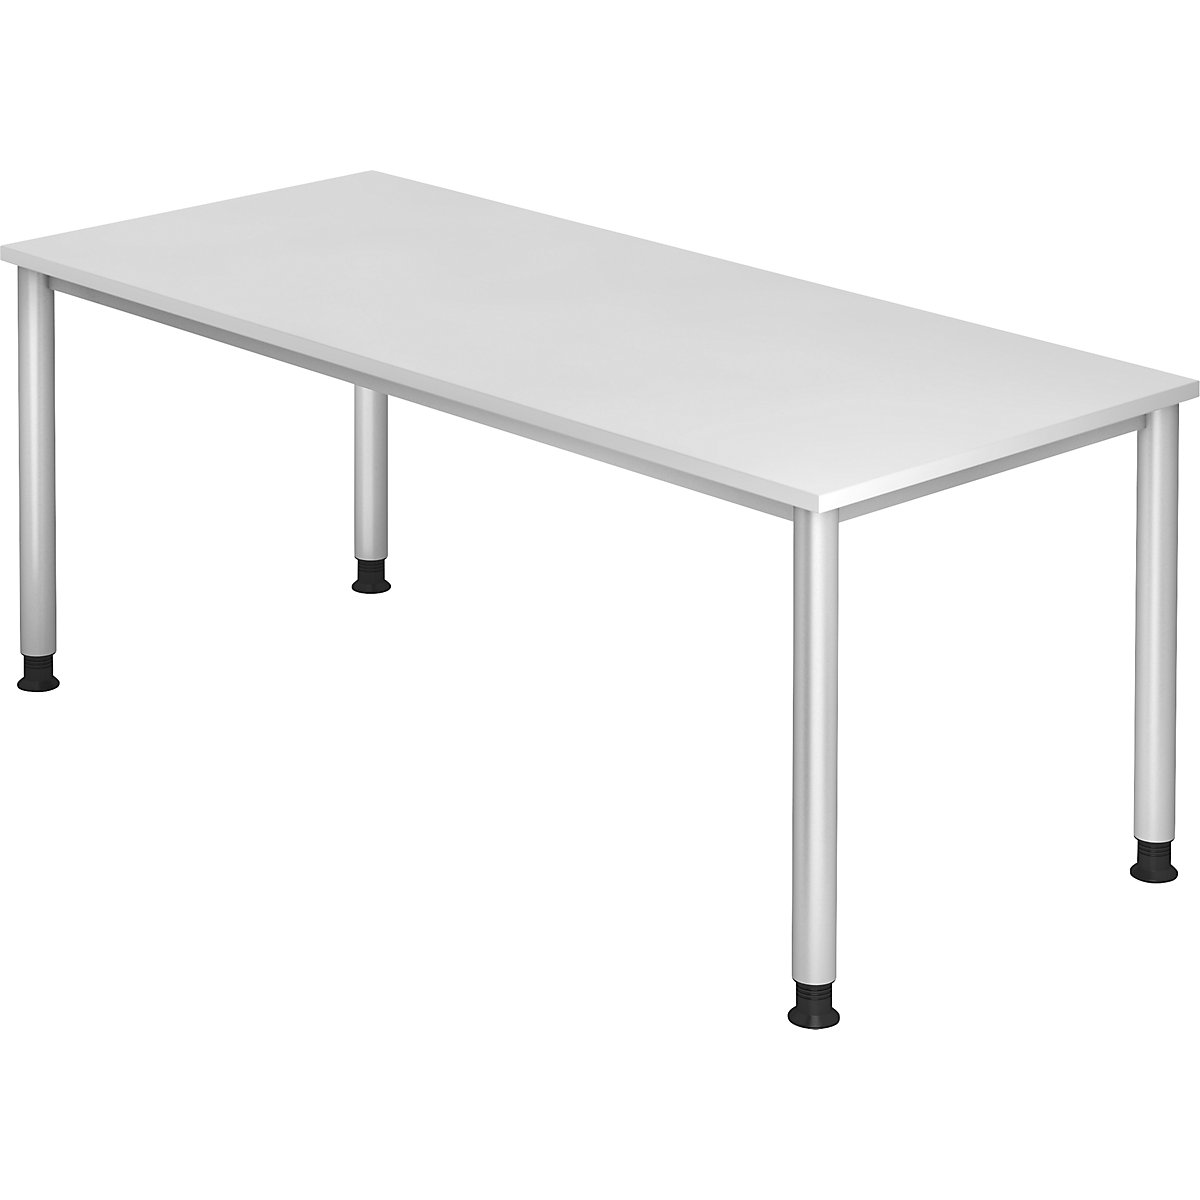 Pisaći stol, ŠxD 1800 x 800 mm, 4 noge od okrugle cijevi, u bijeloj boji-5